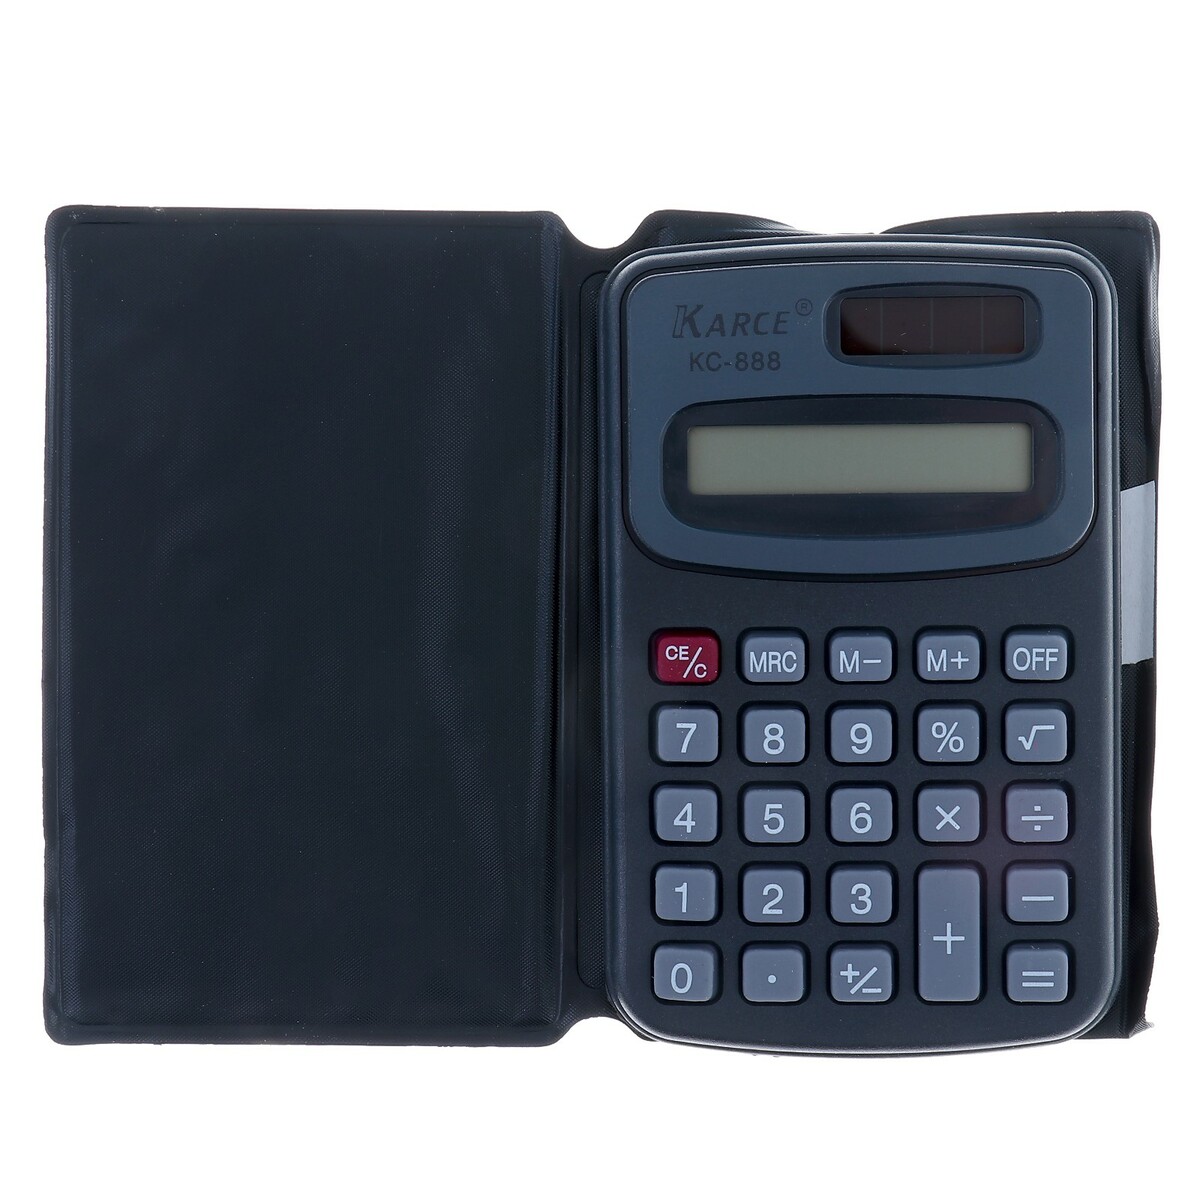 Калькулятор карманный с чехлом 8 - разрядный, kc - 888, работает от батарейки (таблетка ag 10) калькулятор инженерный с чехлом 10 разрядный kd 1005